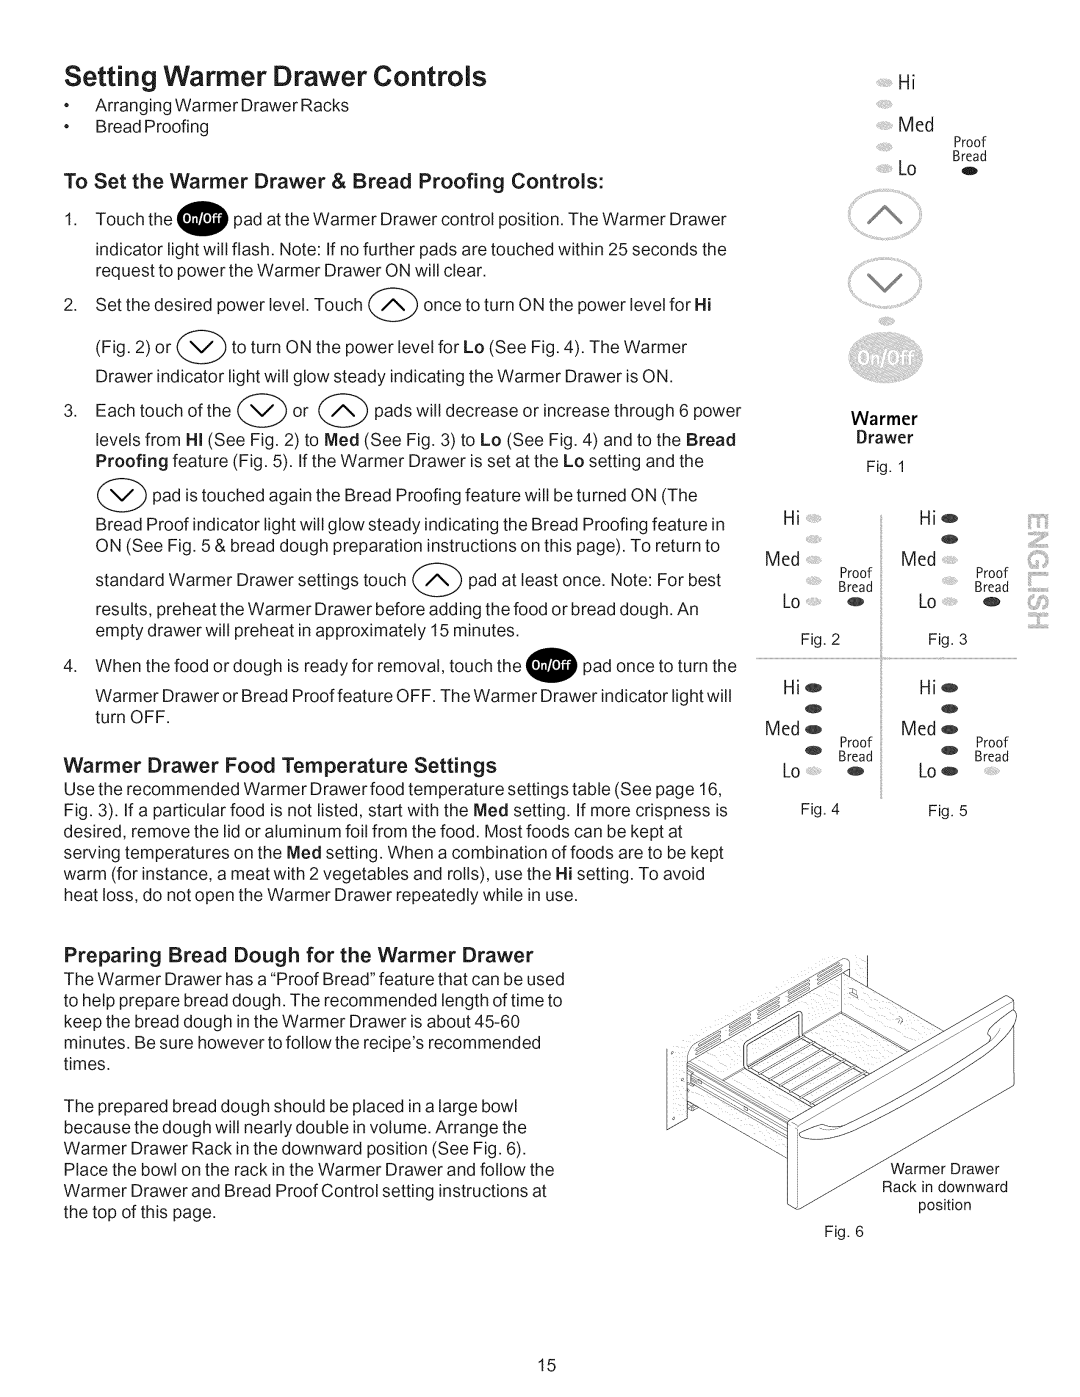 Kenmore 790.9662 manual Setting Warmer Drawer Controls, Warmer Drawer Food Temperature Settings 